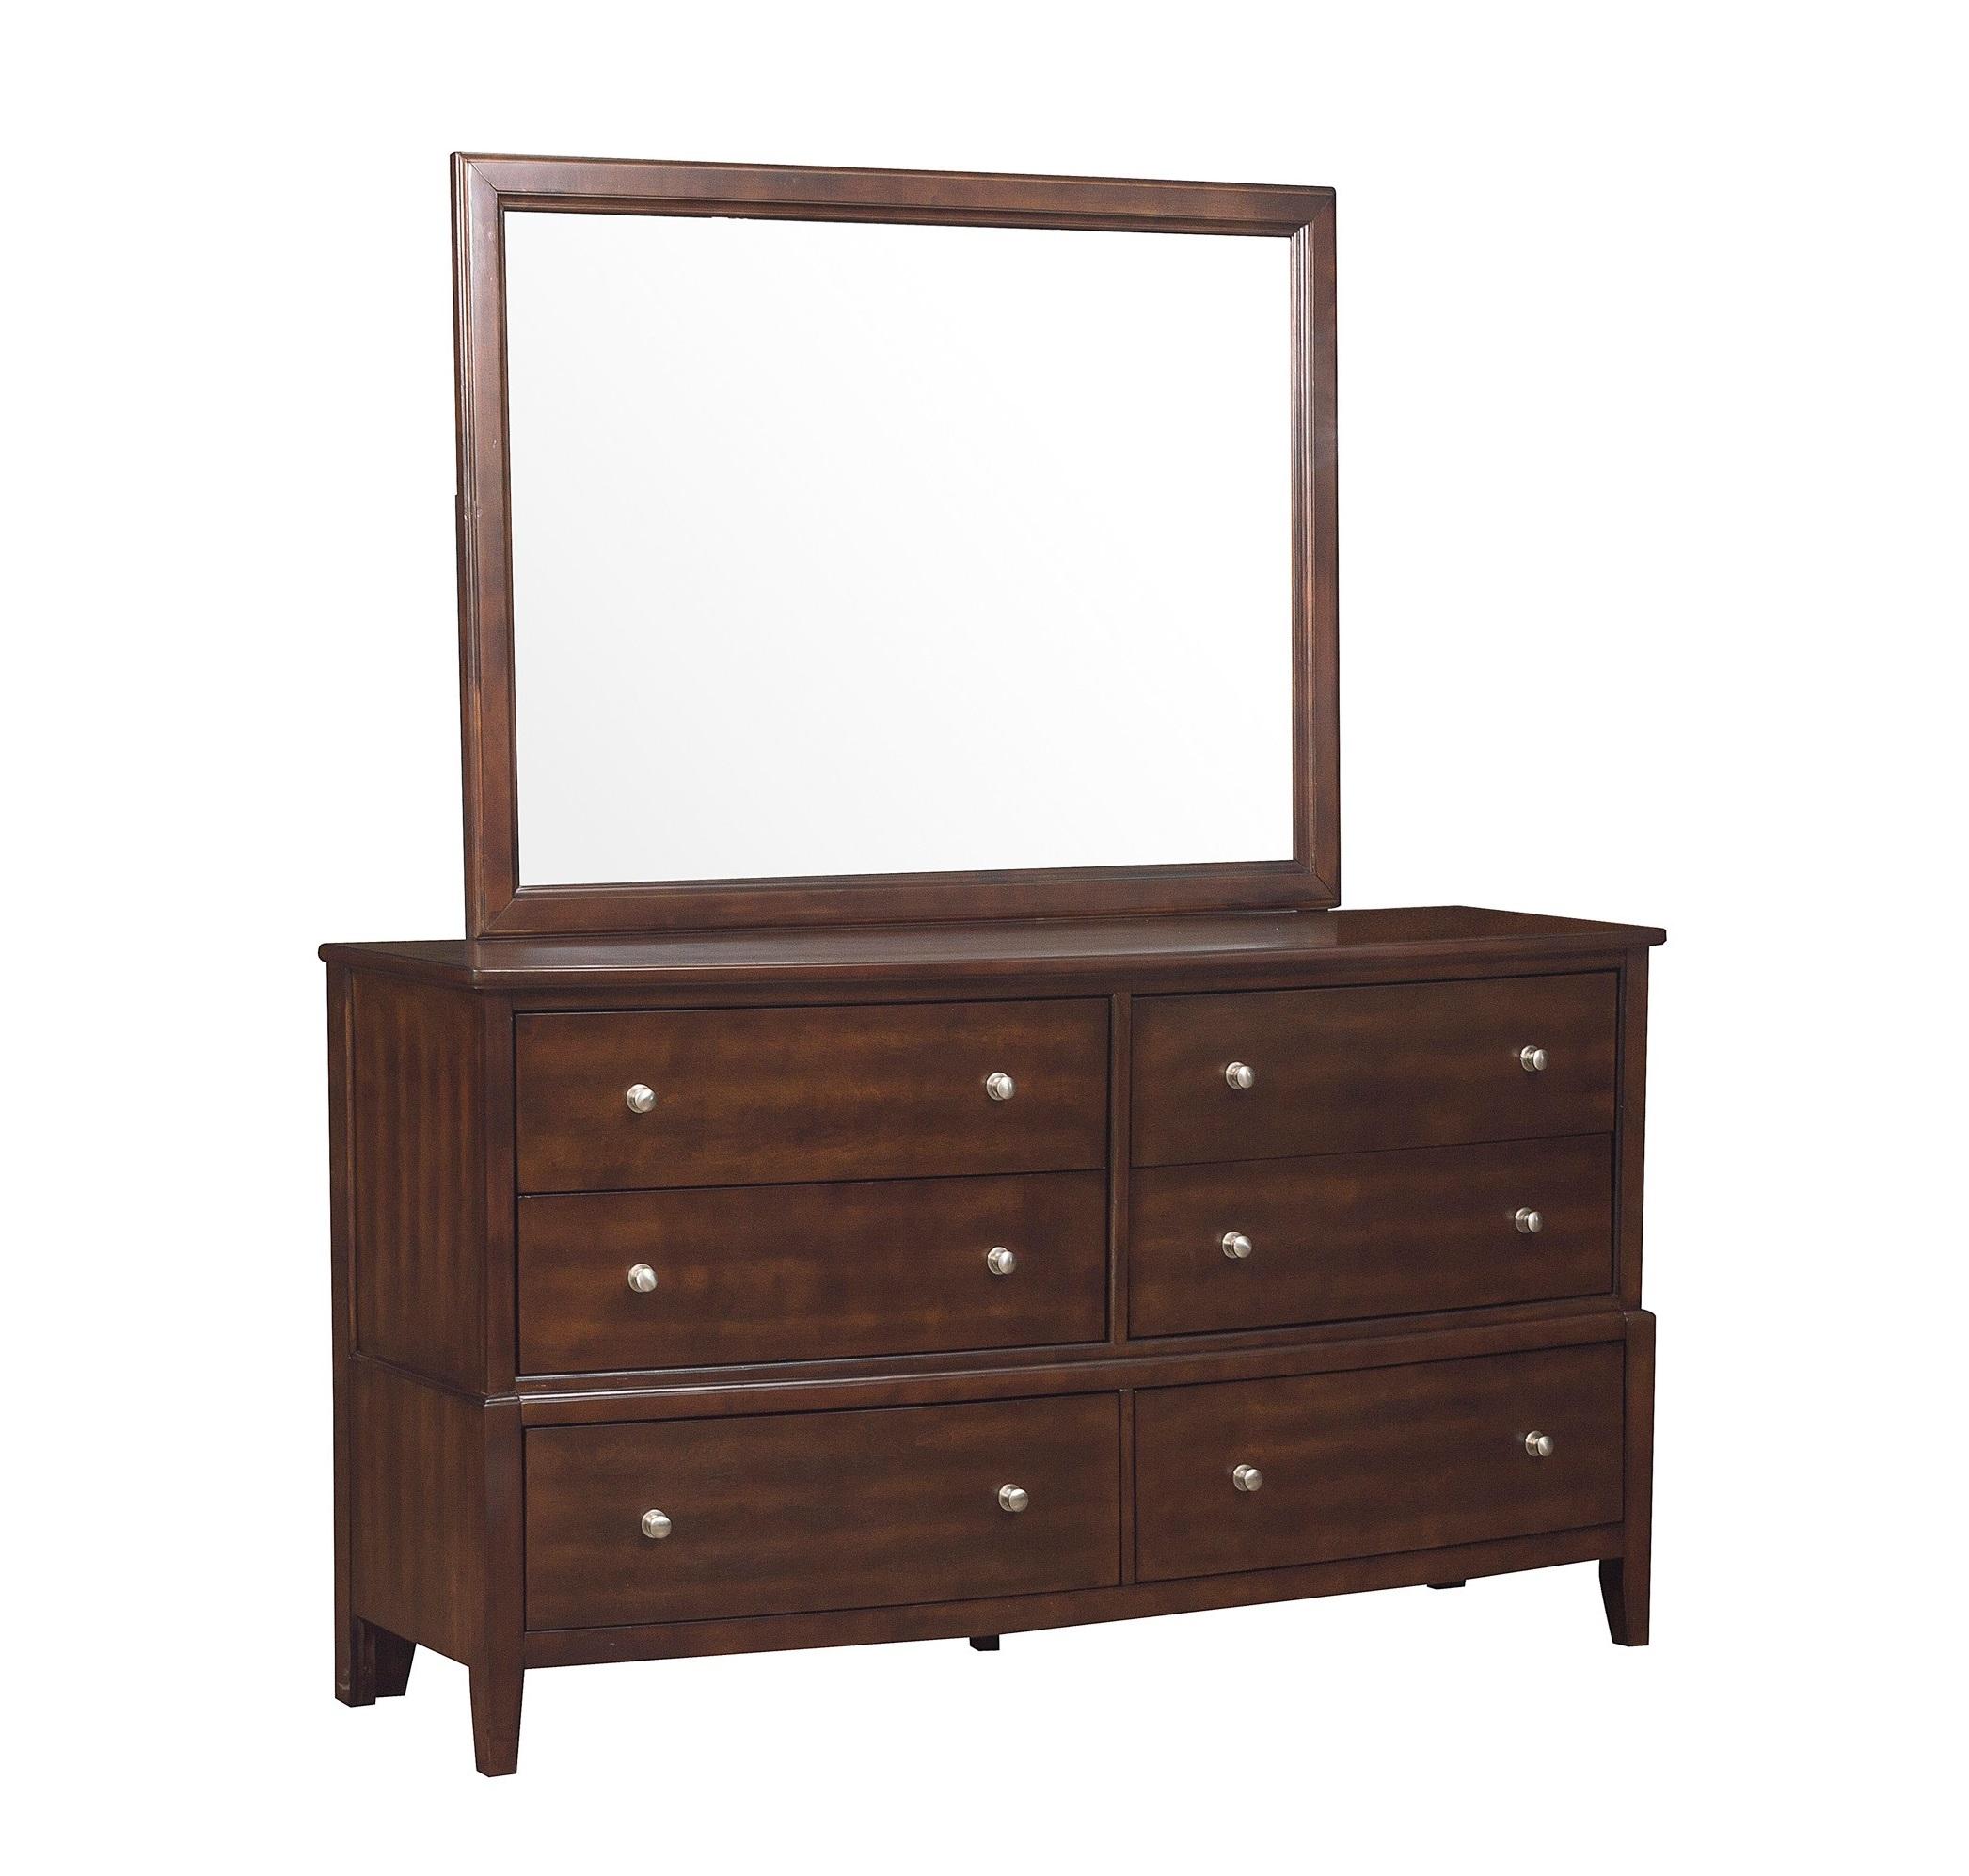 Transitional Dresser w/Mirror 1730-5*6-2PC Cotterill 1730-5*6-2PC in Dark Cherry 